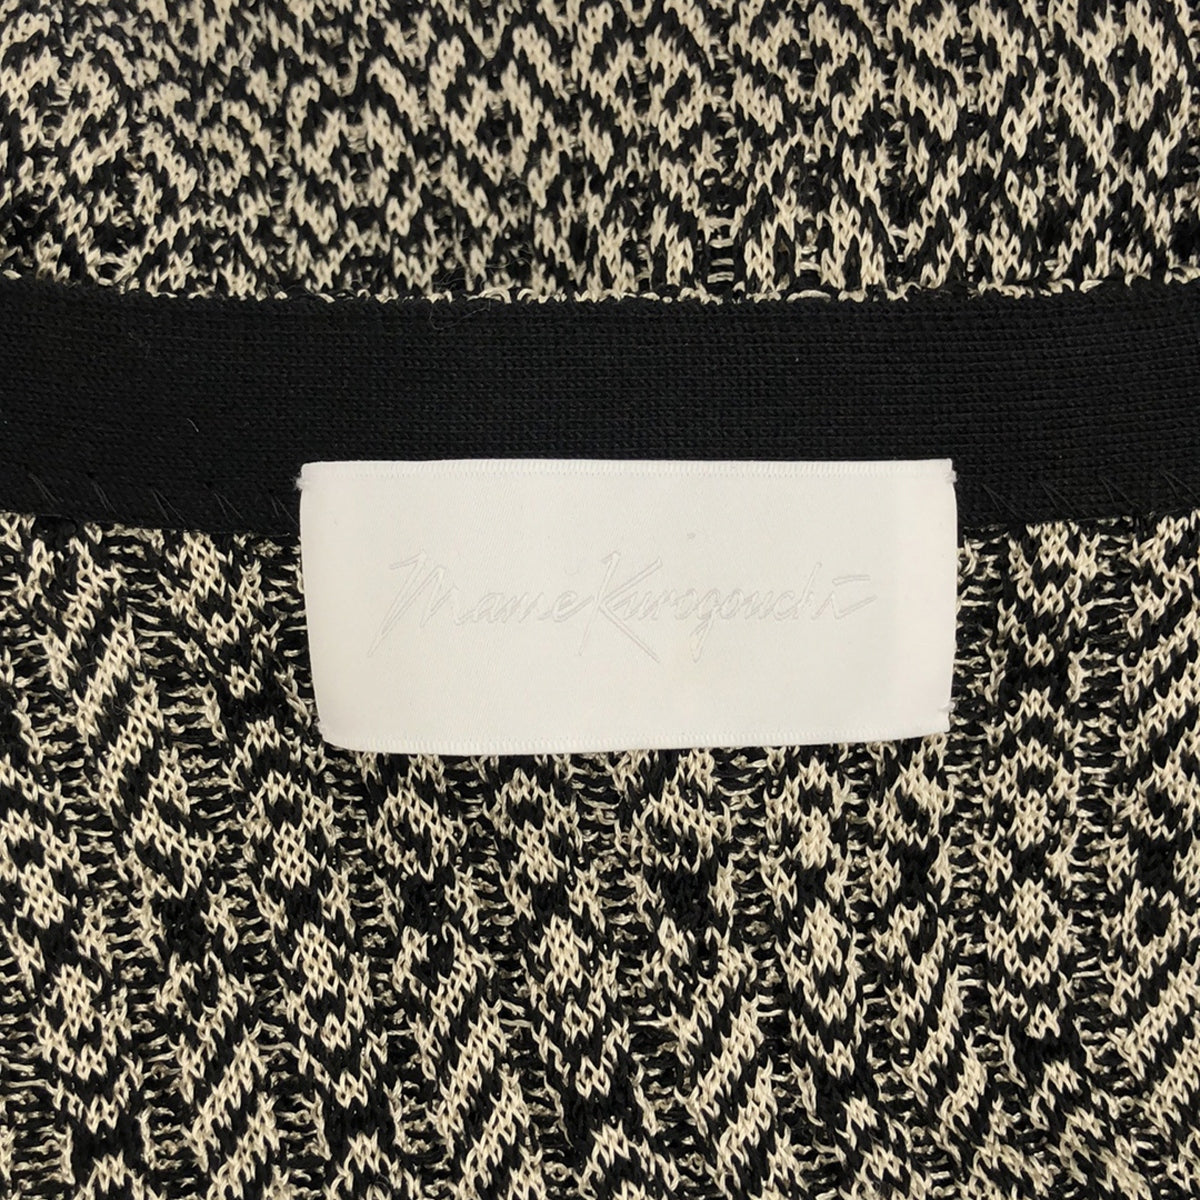 Mame Kurogouchi / マメクロゴウチ | 2020SS | Mixed Knitted Fabric Peplum ドレス | 1 |  レディース